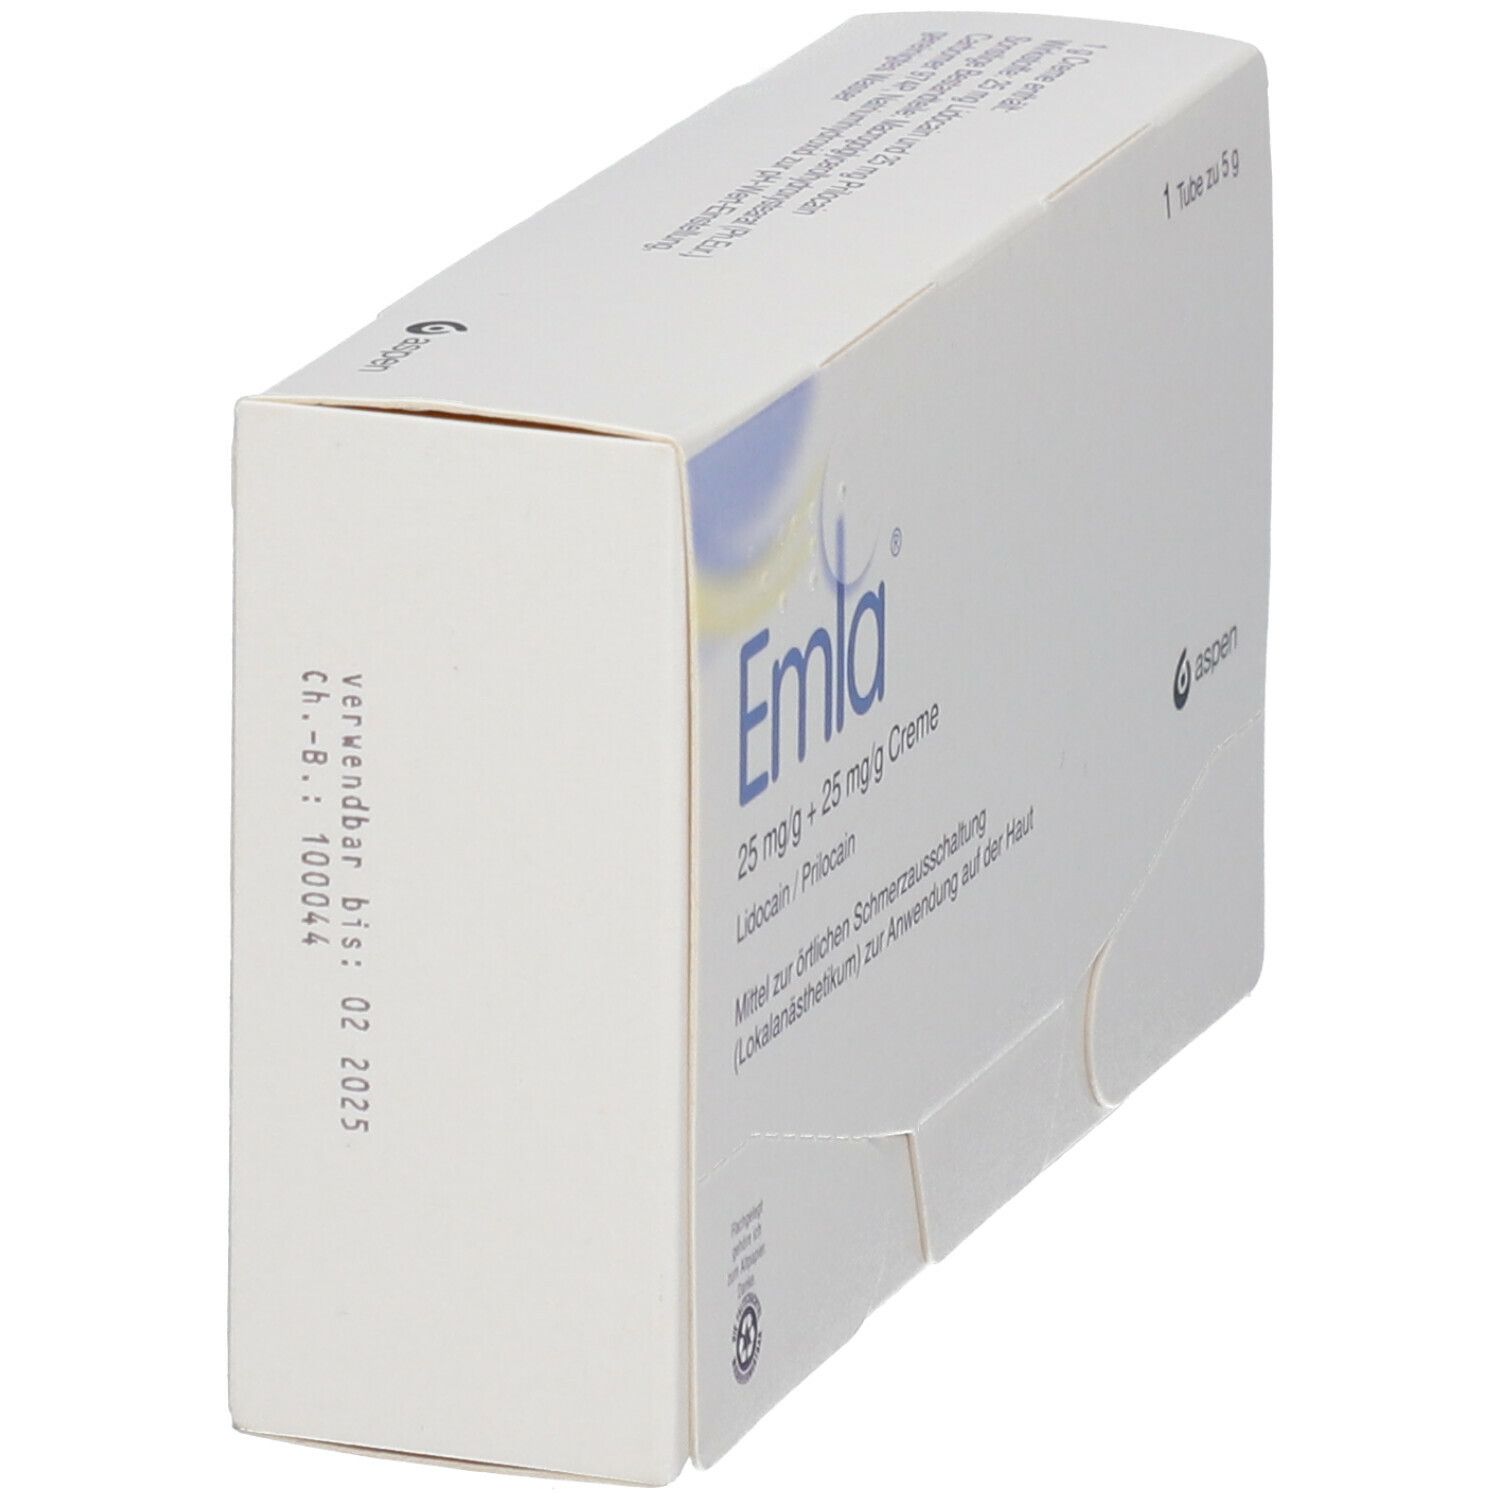 Emla® 25 mg/g Lidocain + 25 mg/g Prilocain